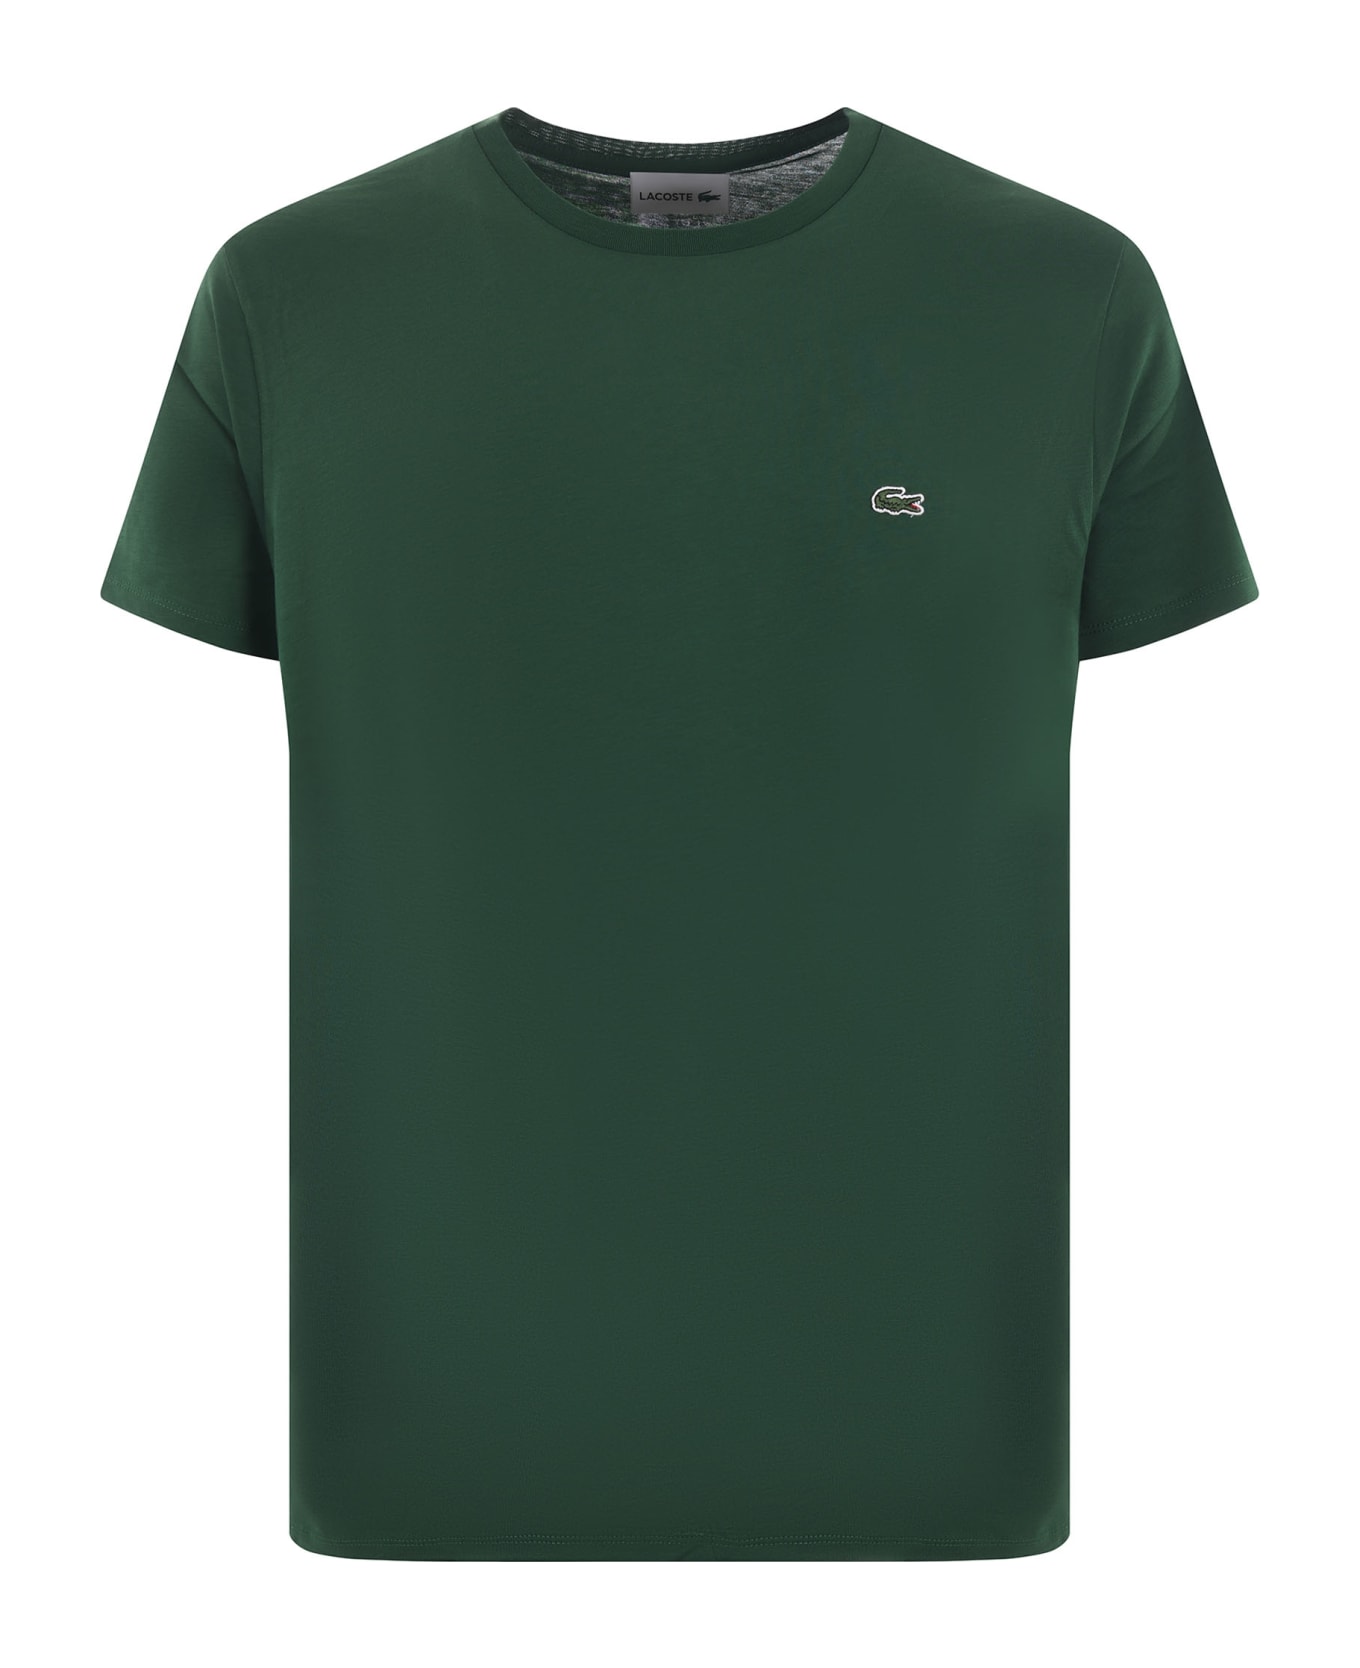 Lacoste Pima Cotton T-shirt - Verde militare シャツ